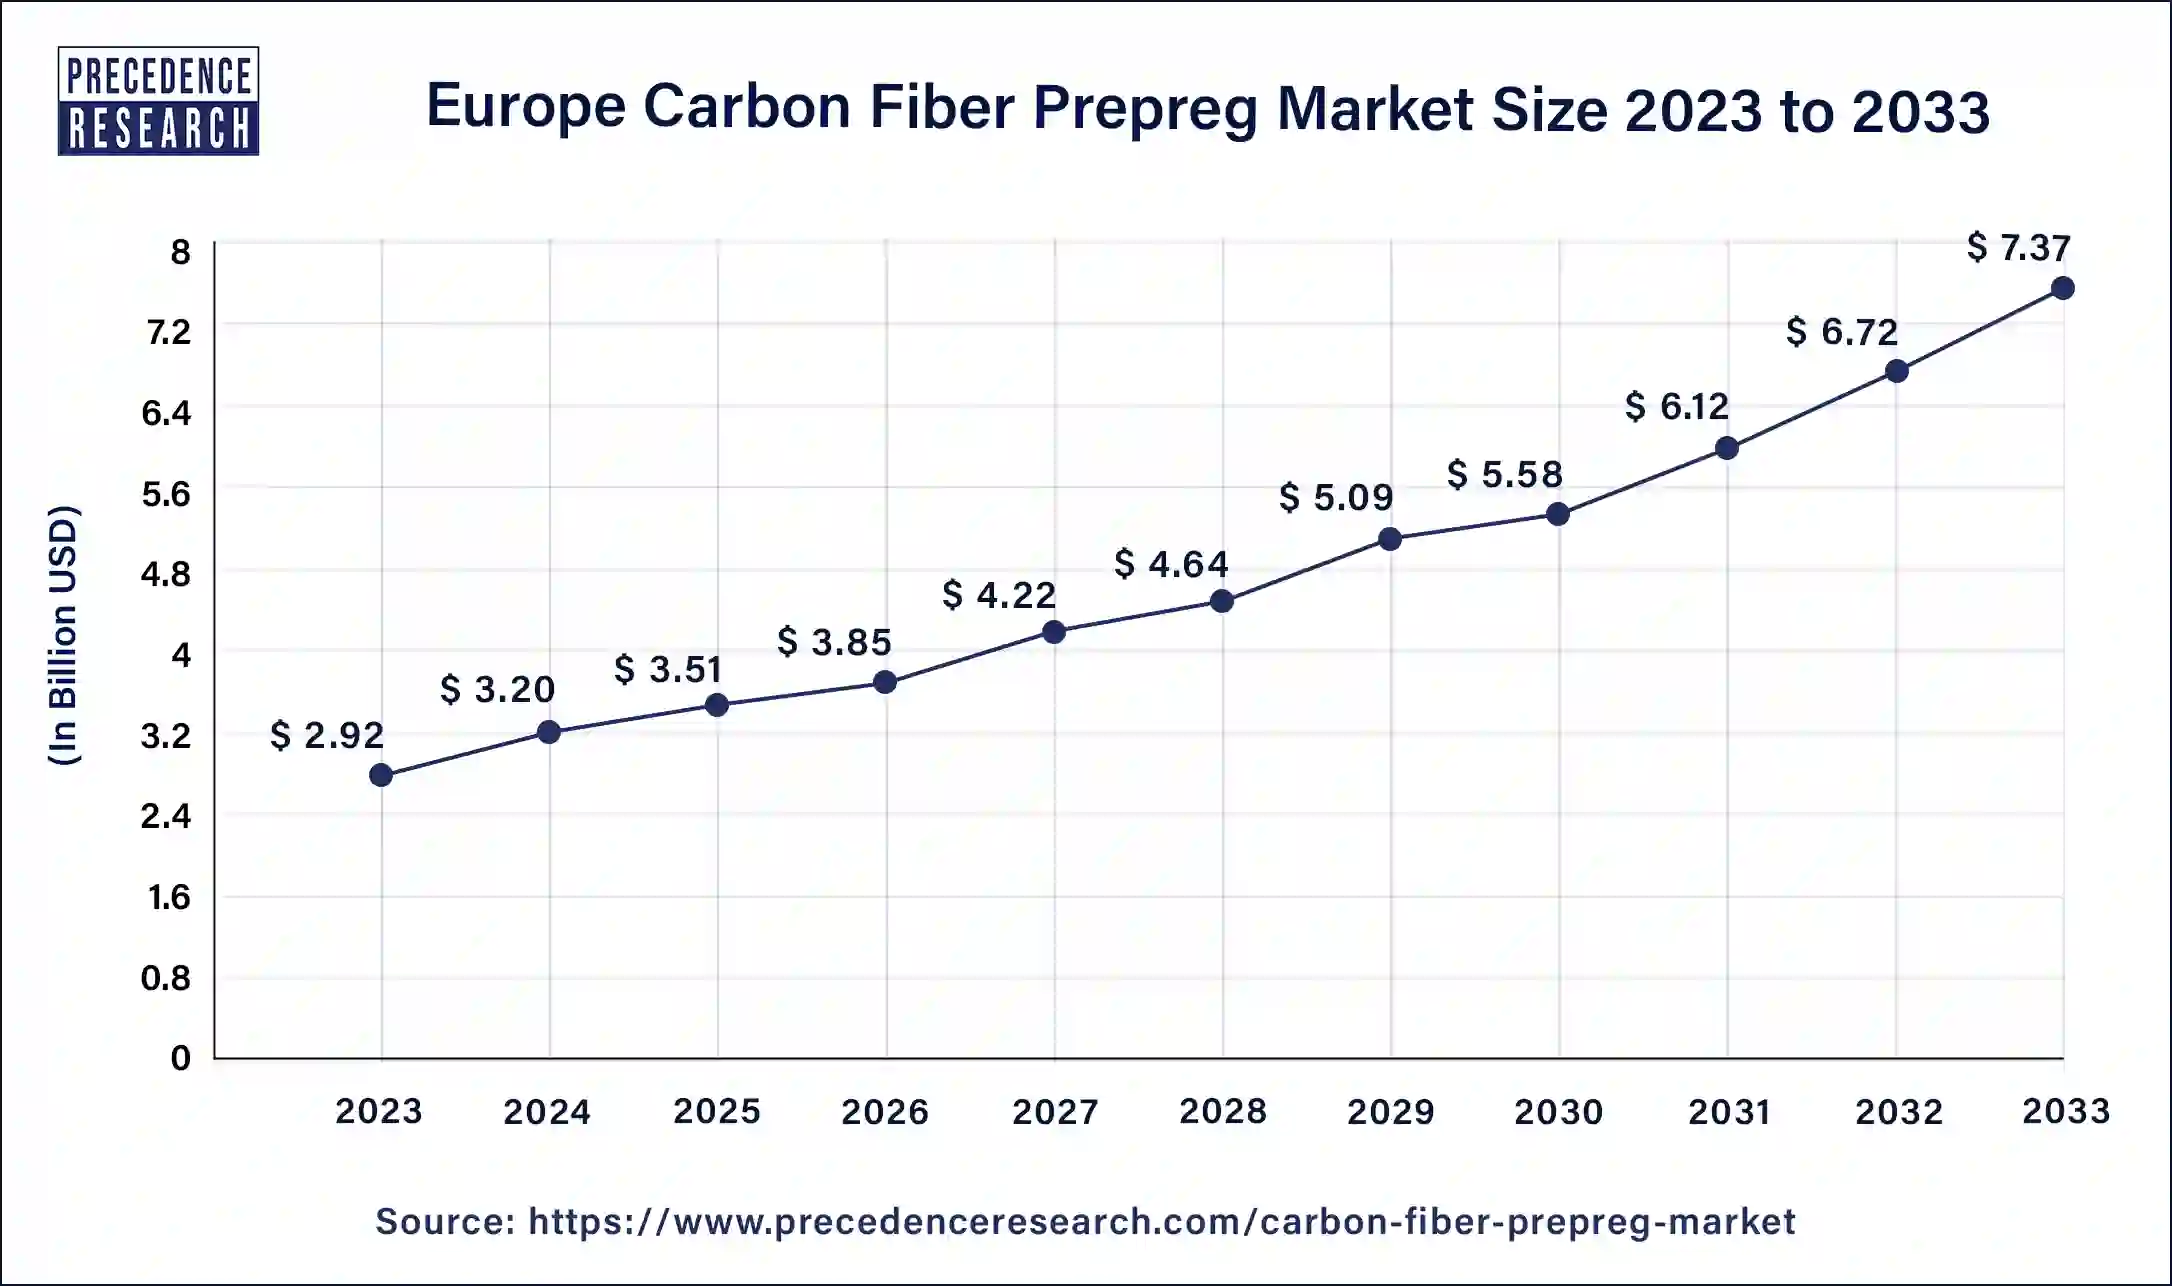 Europe Carbon Fiber Prepreg Market Size 2024 to 2033